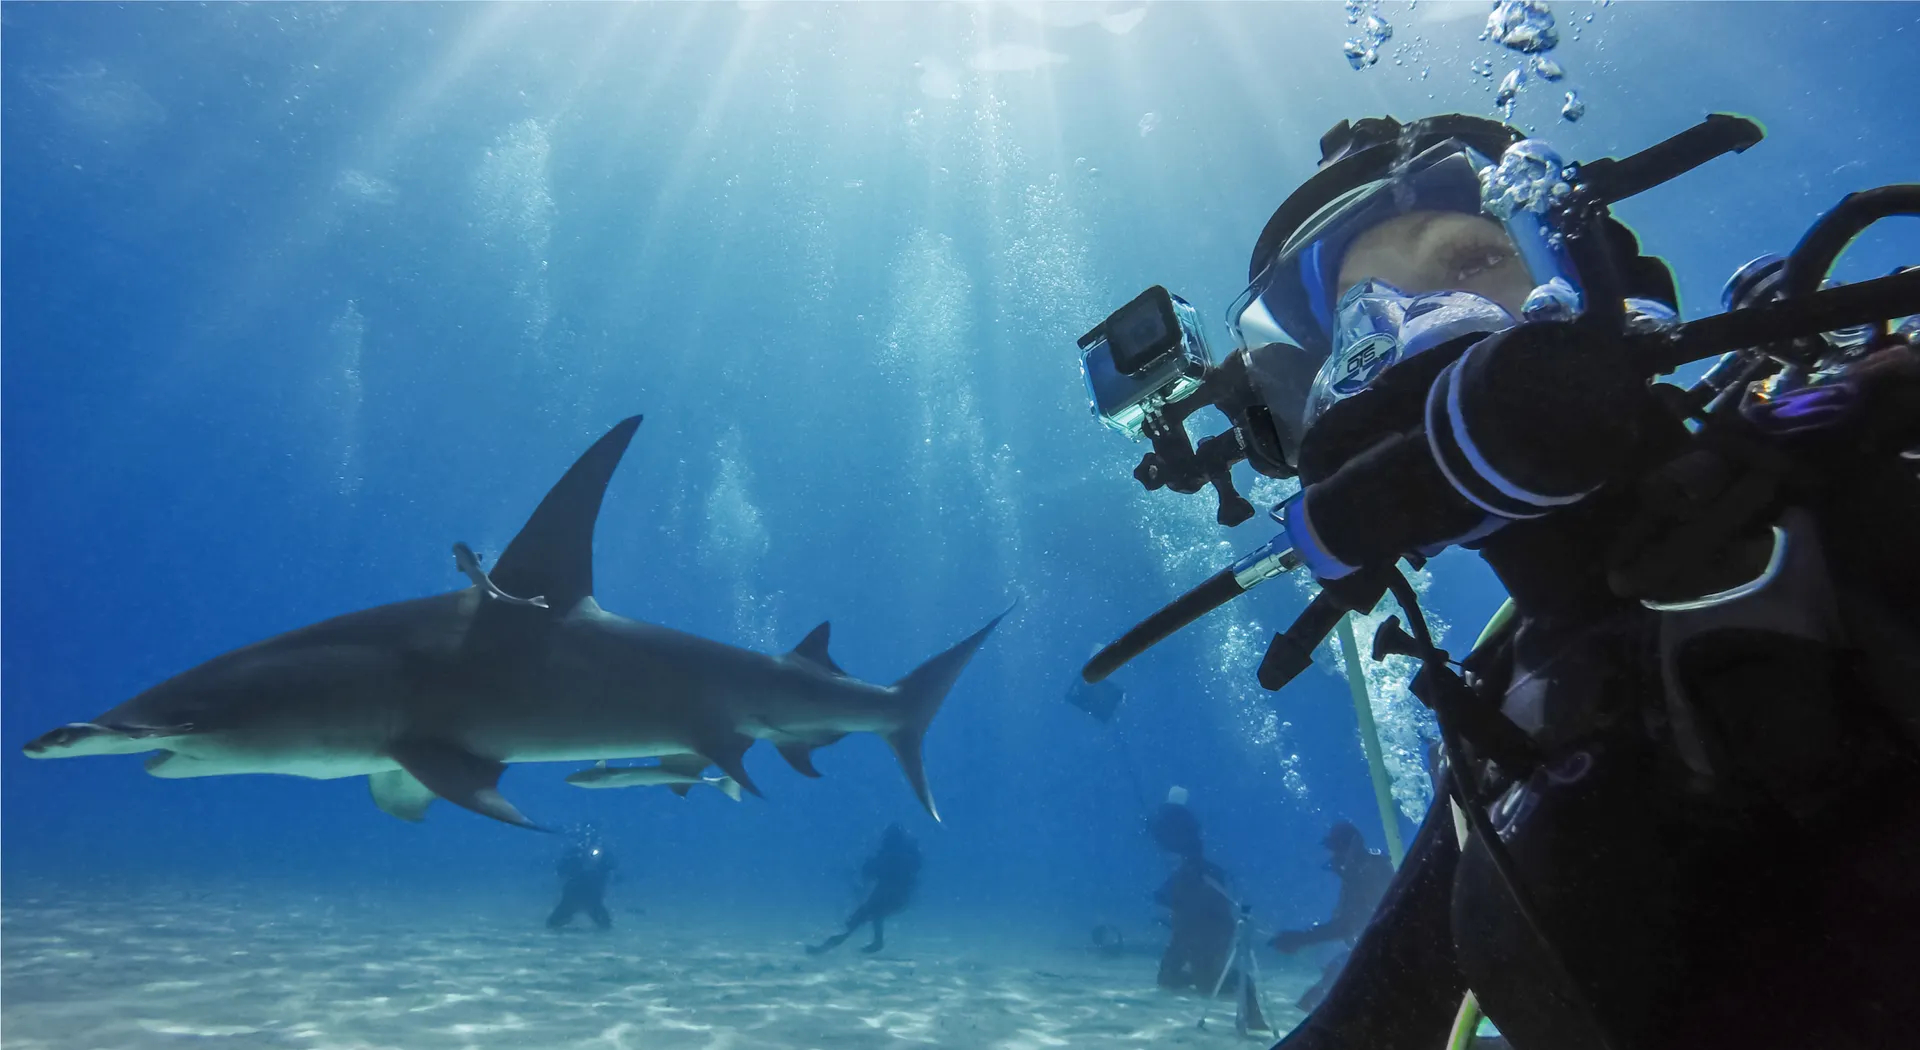 คำอธิบายเพิ่มเติมเกี่ยวกับ GoPro HERO10 Black เซตกล้องโกโปรสำหรับดำน้ำ Dive Power B พร้อมเคสกันน้ำ,แบตเตอรี่ Enduro และกระเป๋าพรีเมี่ยมกันน้ำ